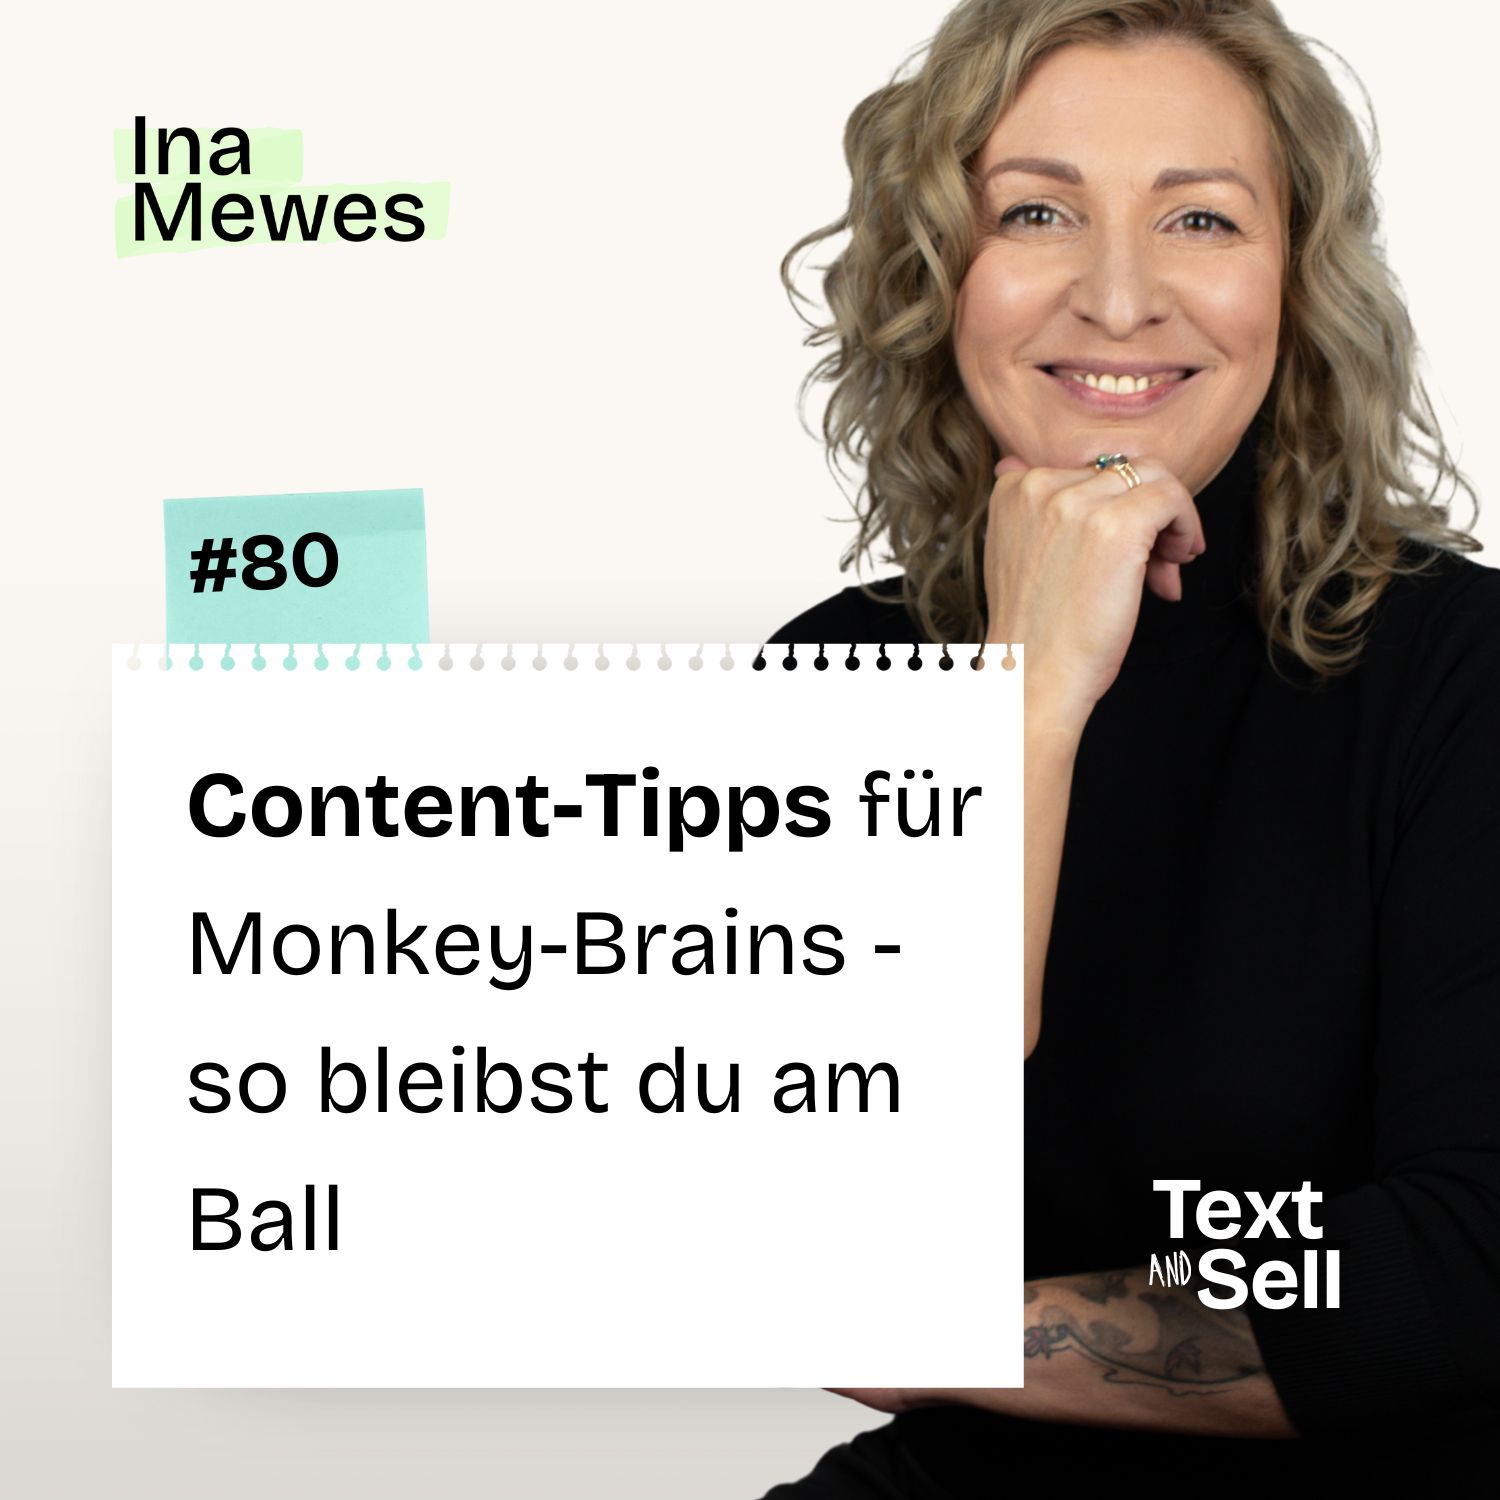 Content-Tipps für Monkey Brains: So bleibst du am Ball